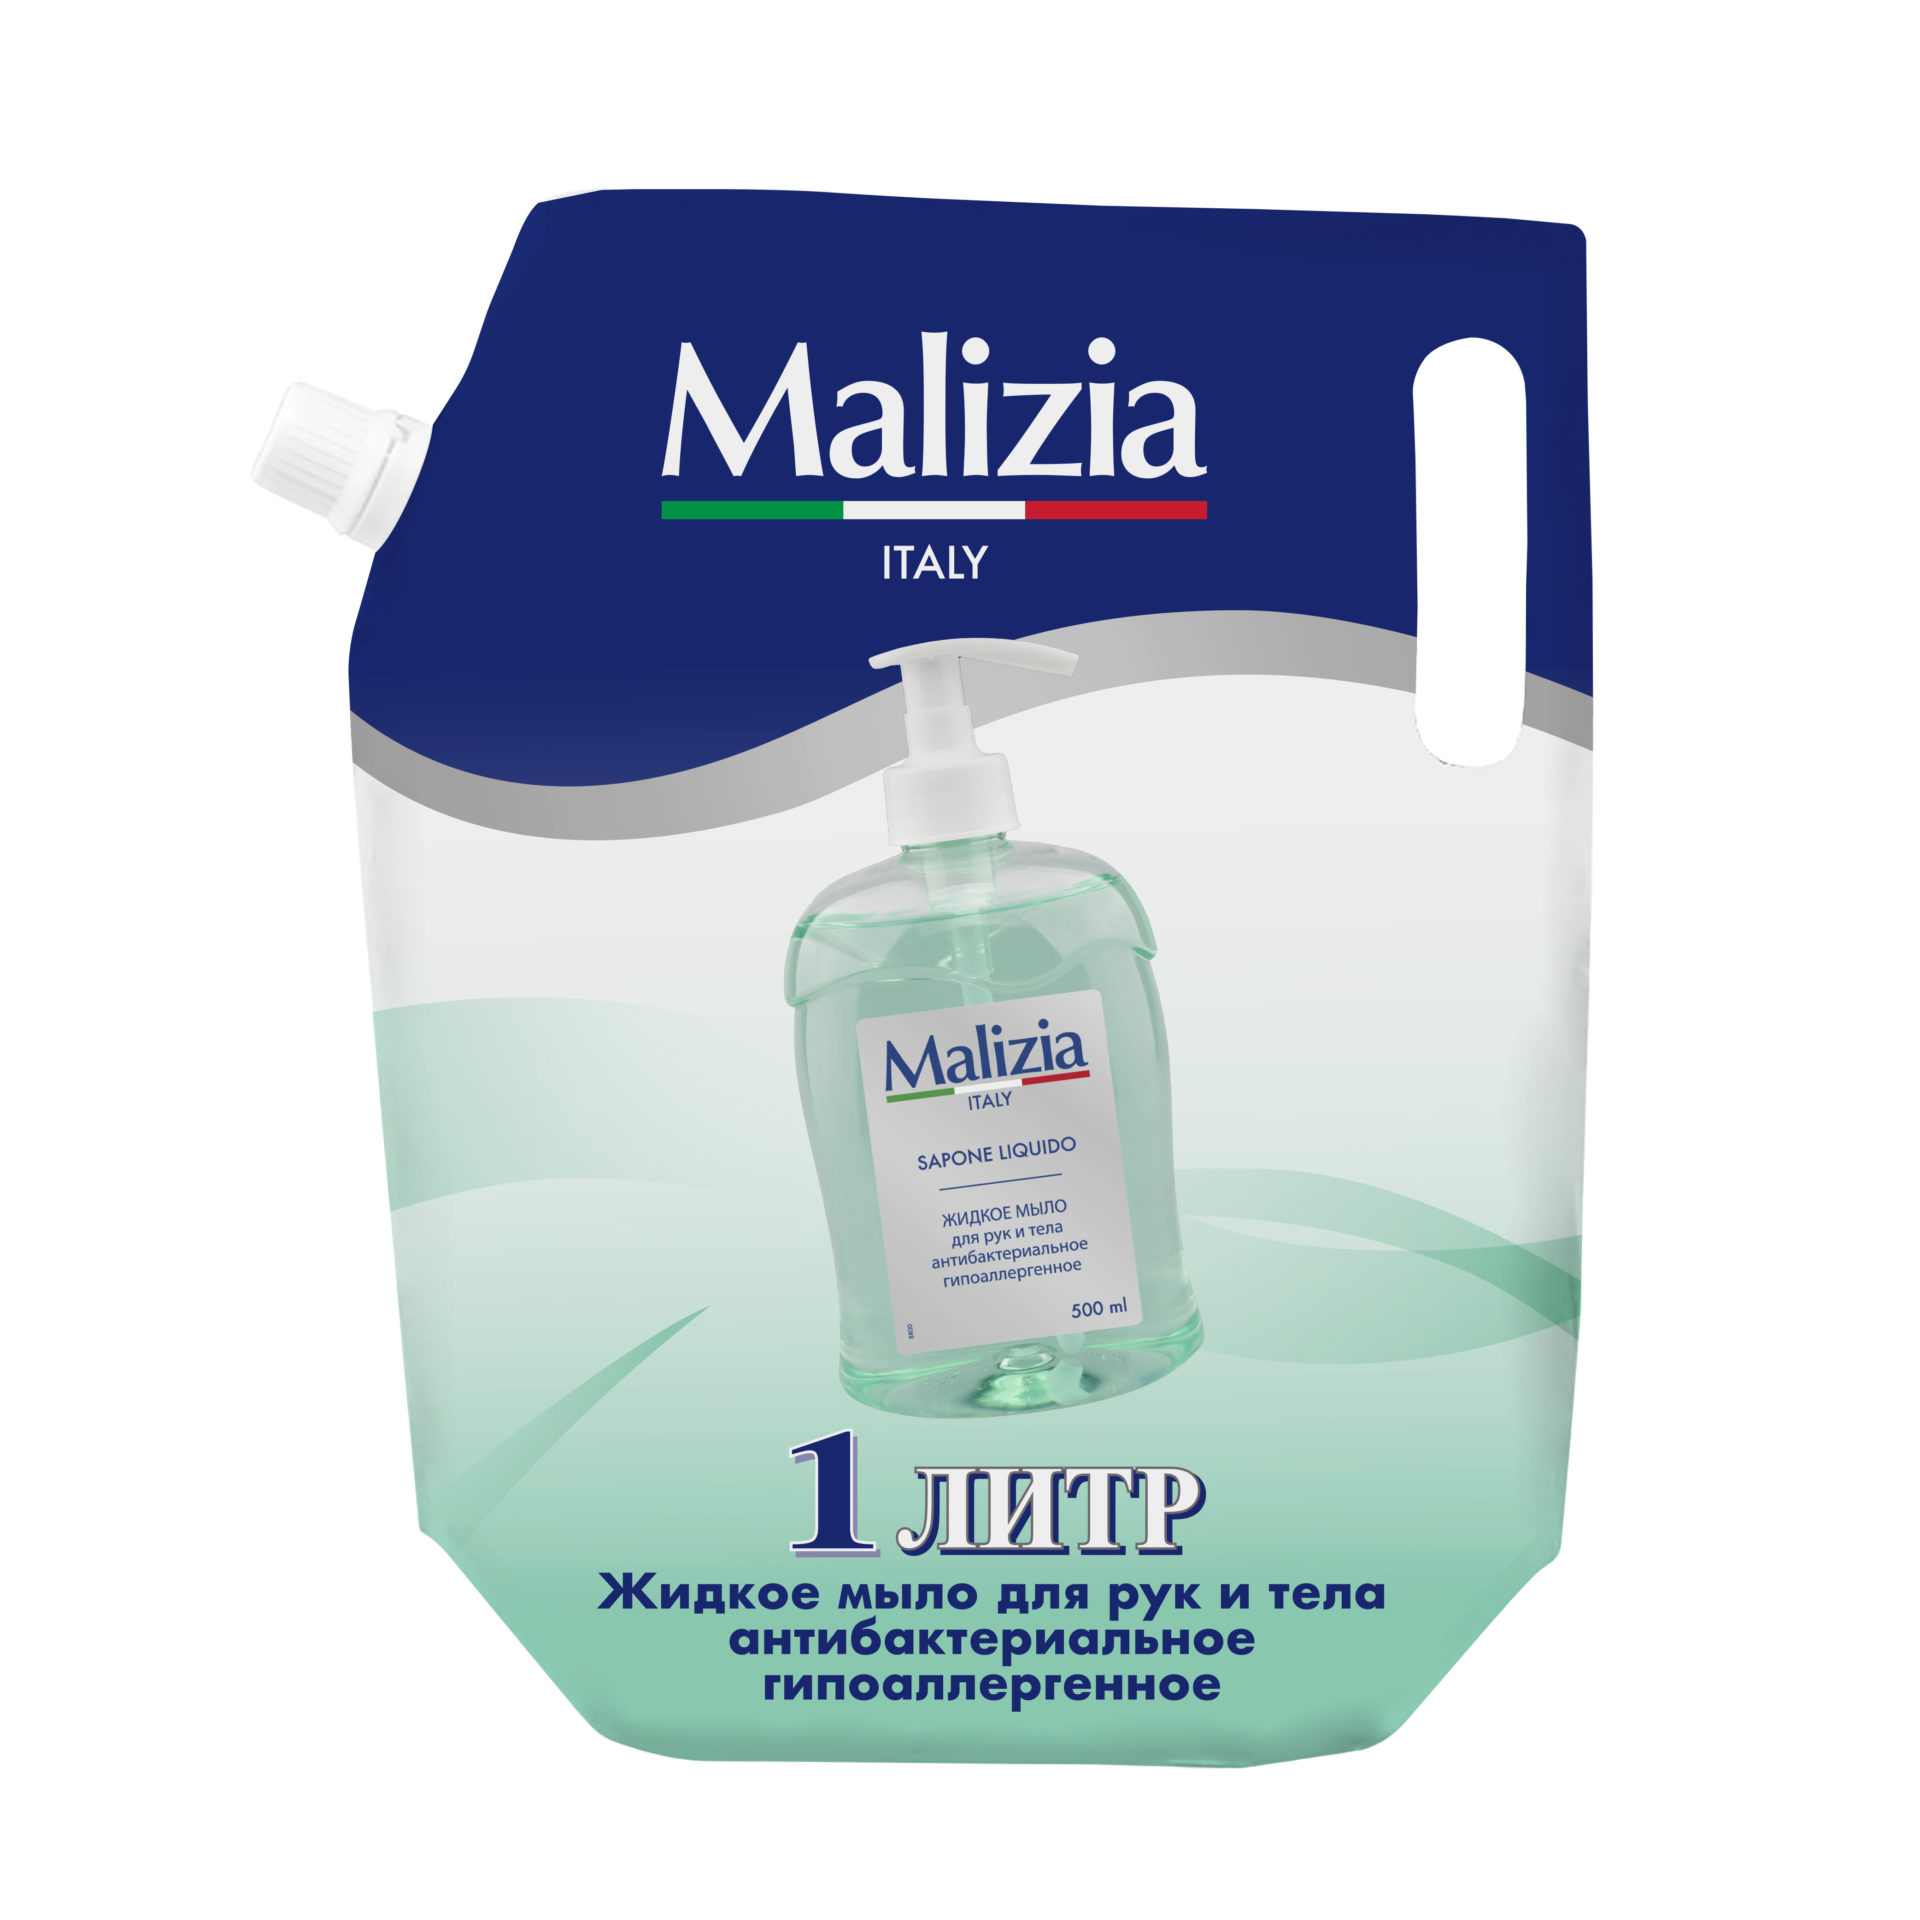 Malizia Жидкое мыло для рук и тела антибактериальное гипоаллергенное 1000 мл